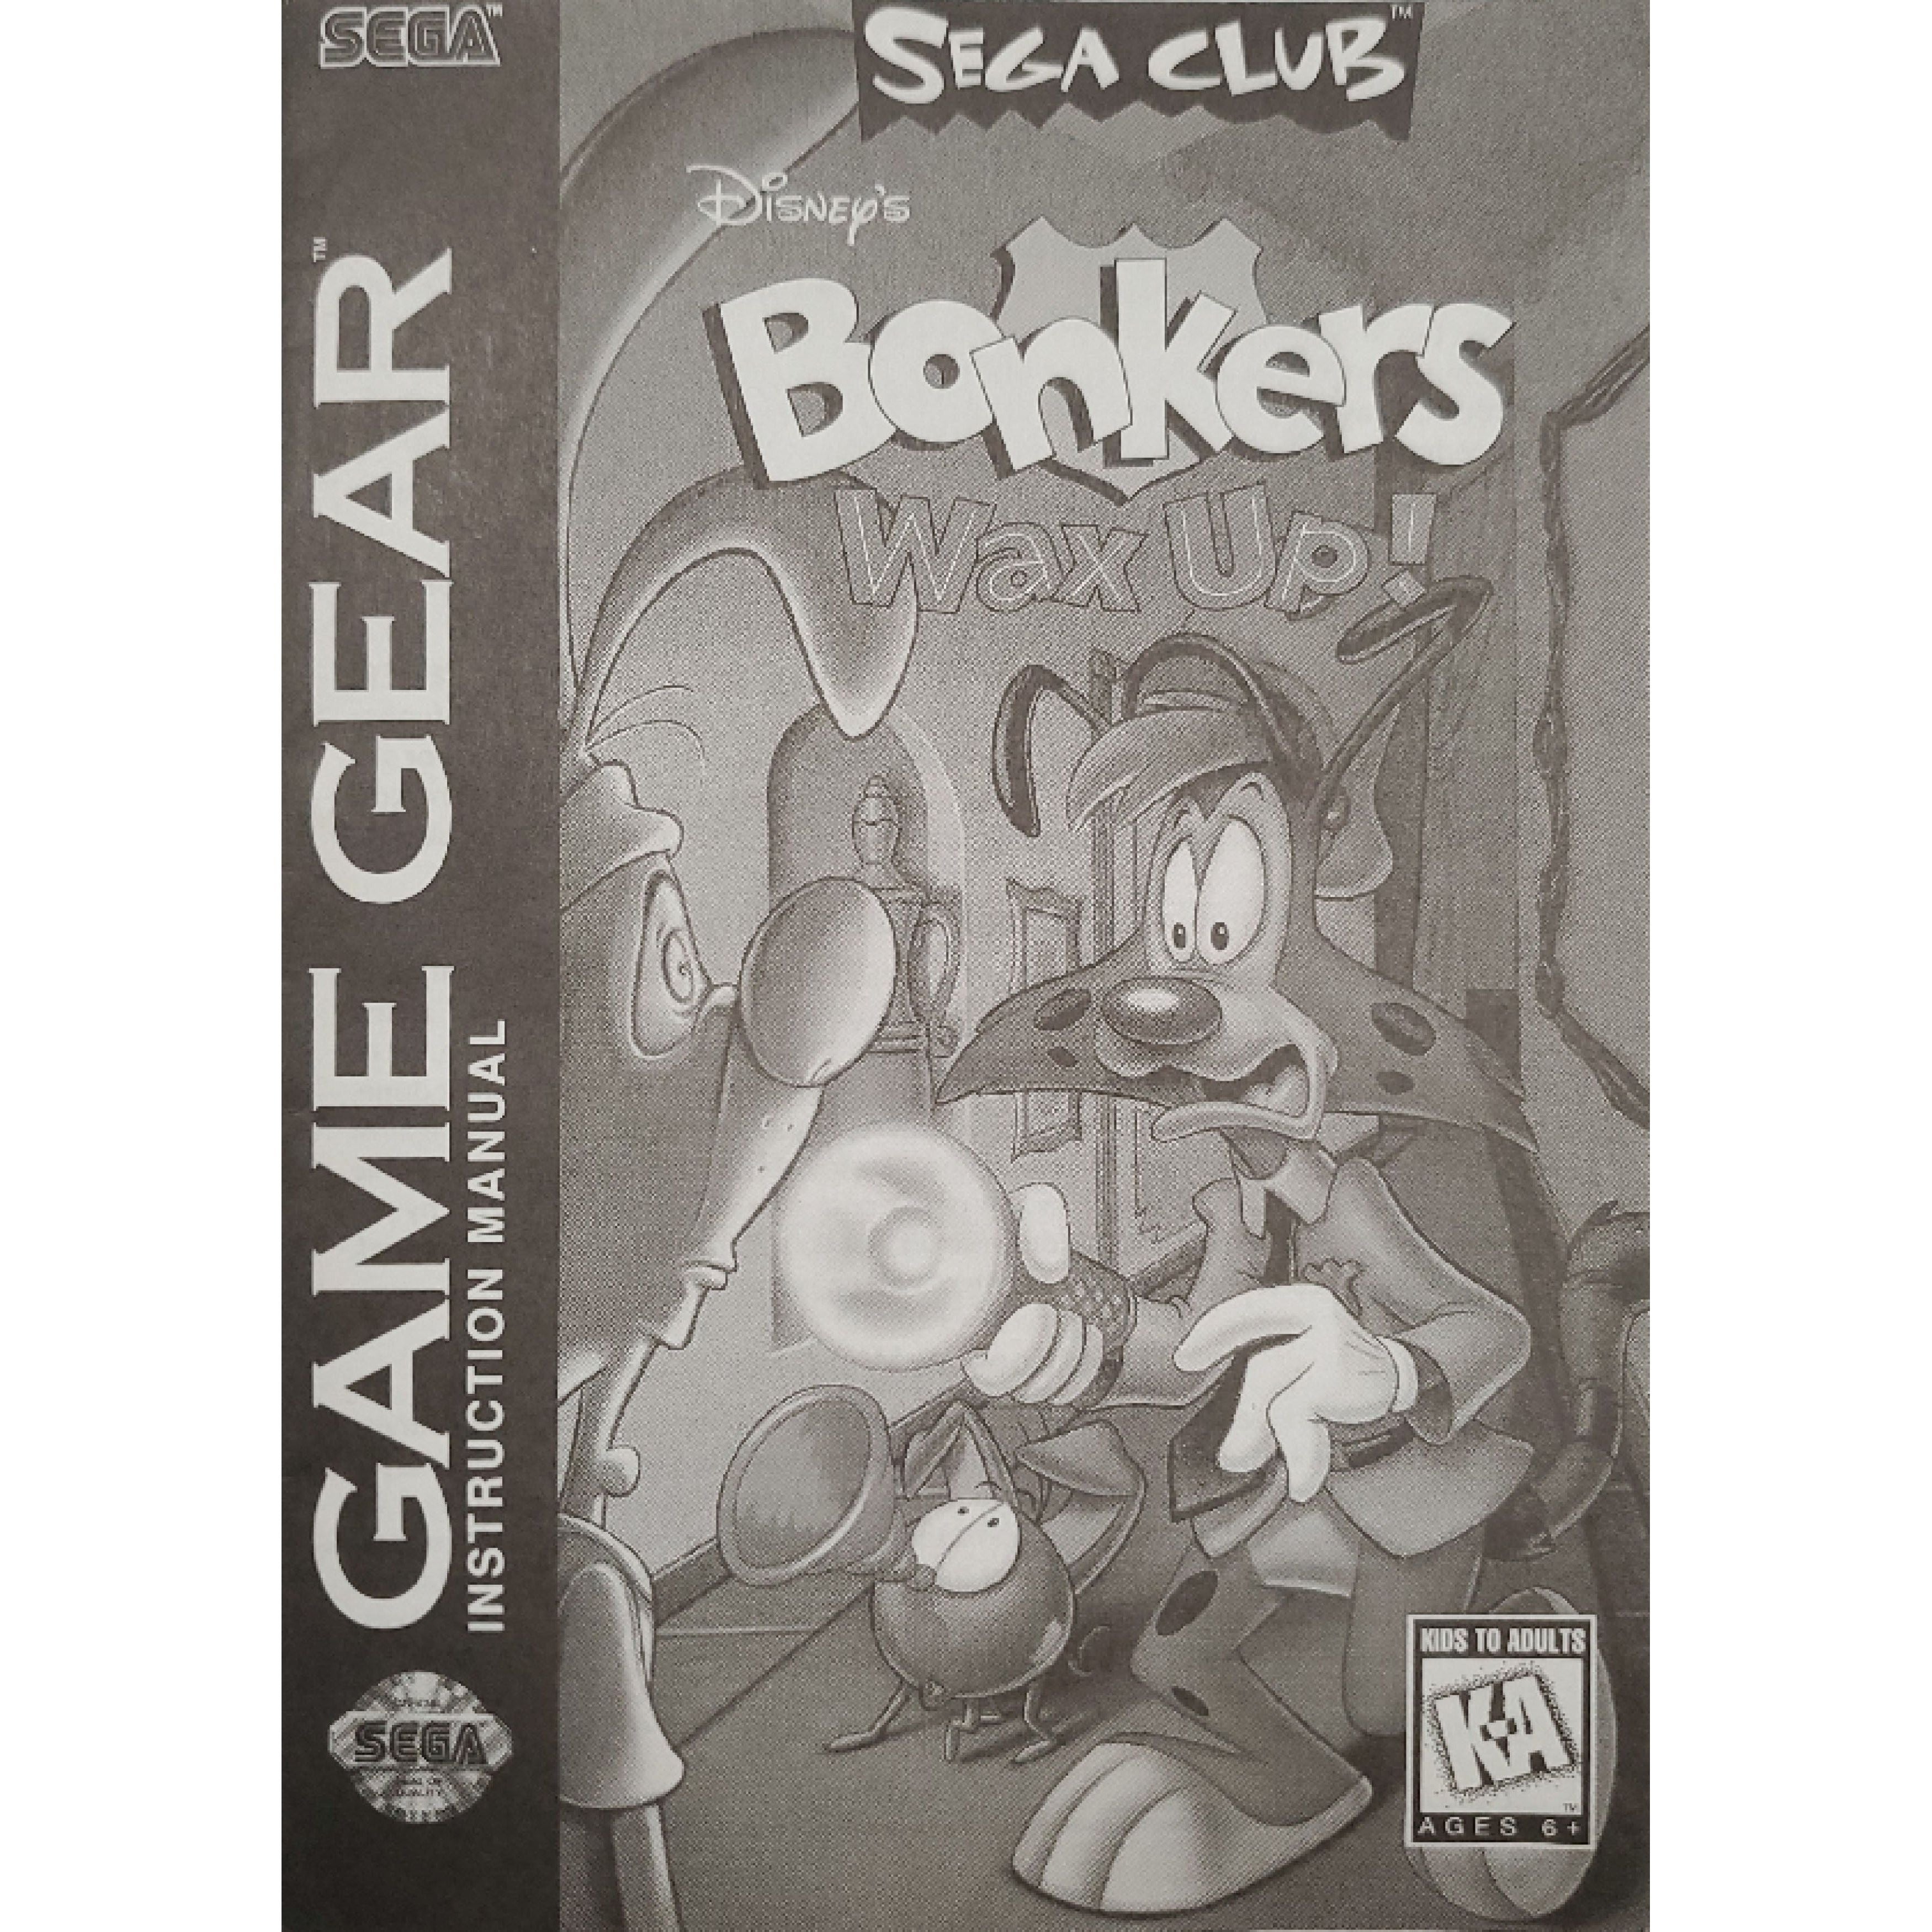 GameGear - Bonkers Wax Up (Manuel monochrome)